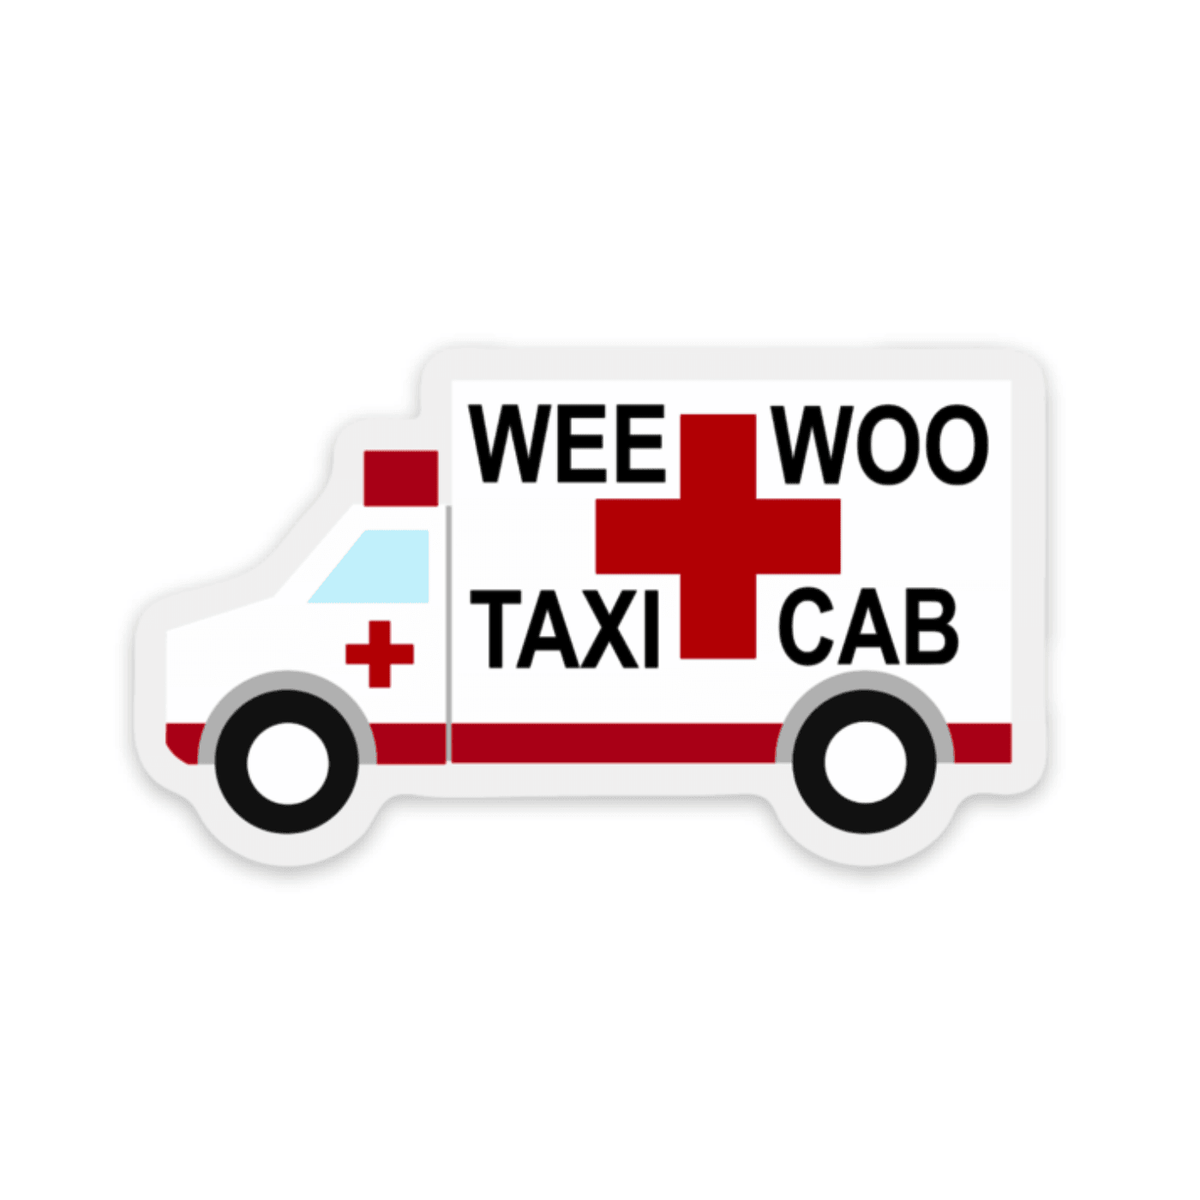 Wee Woo Taxi Cab Decal - Rad Girl Creations